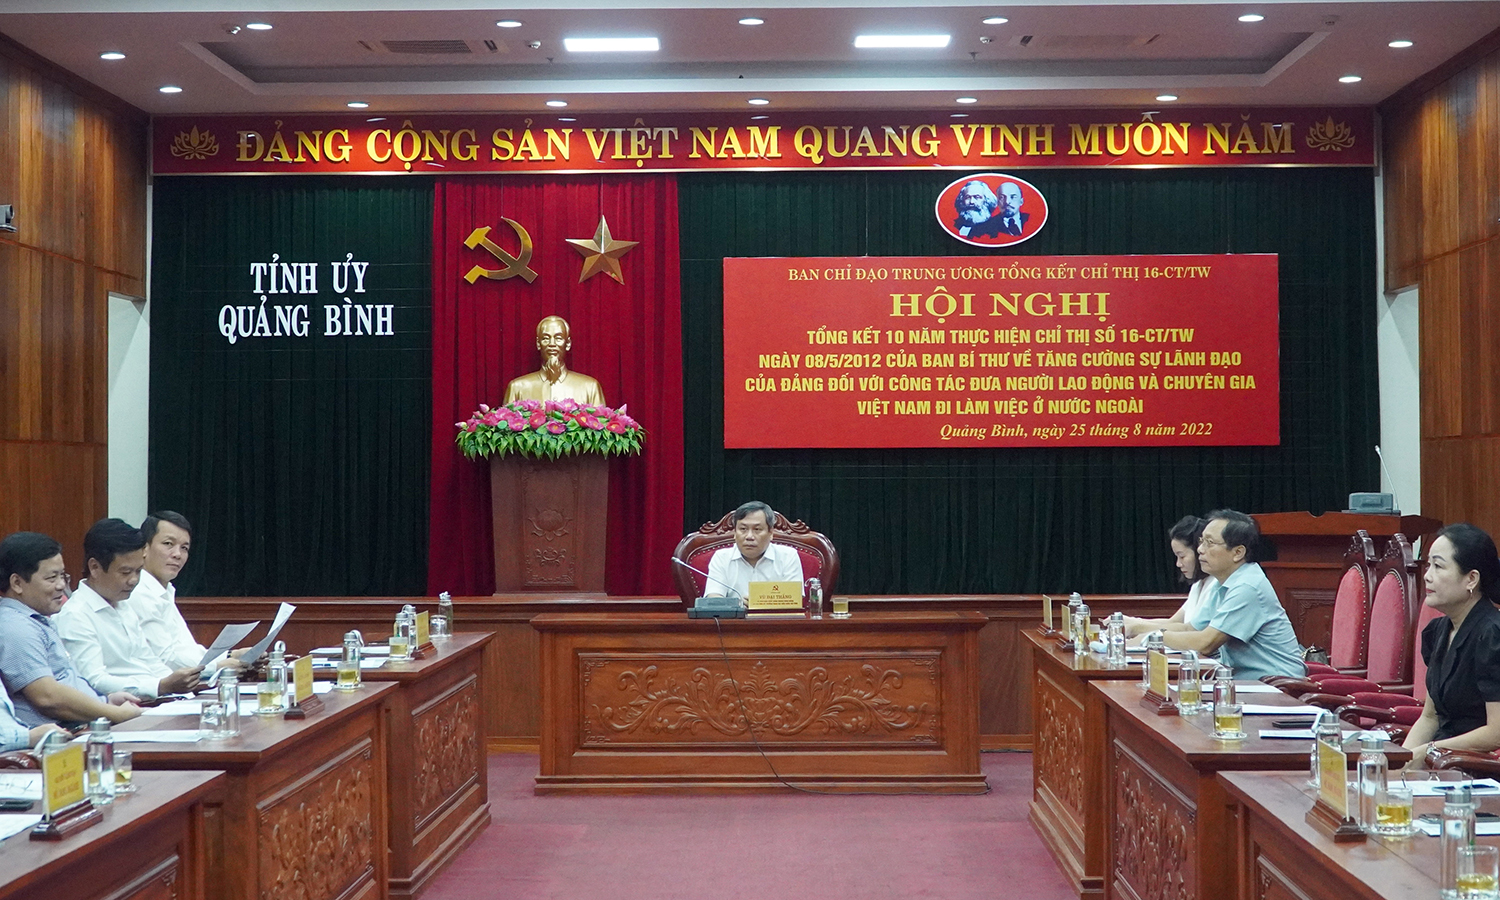 Tổng kết Chỉ thị 16 về đưa người lao động và chuyên gia Việt Nam đi làm việc ở nước ngoài